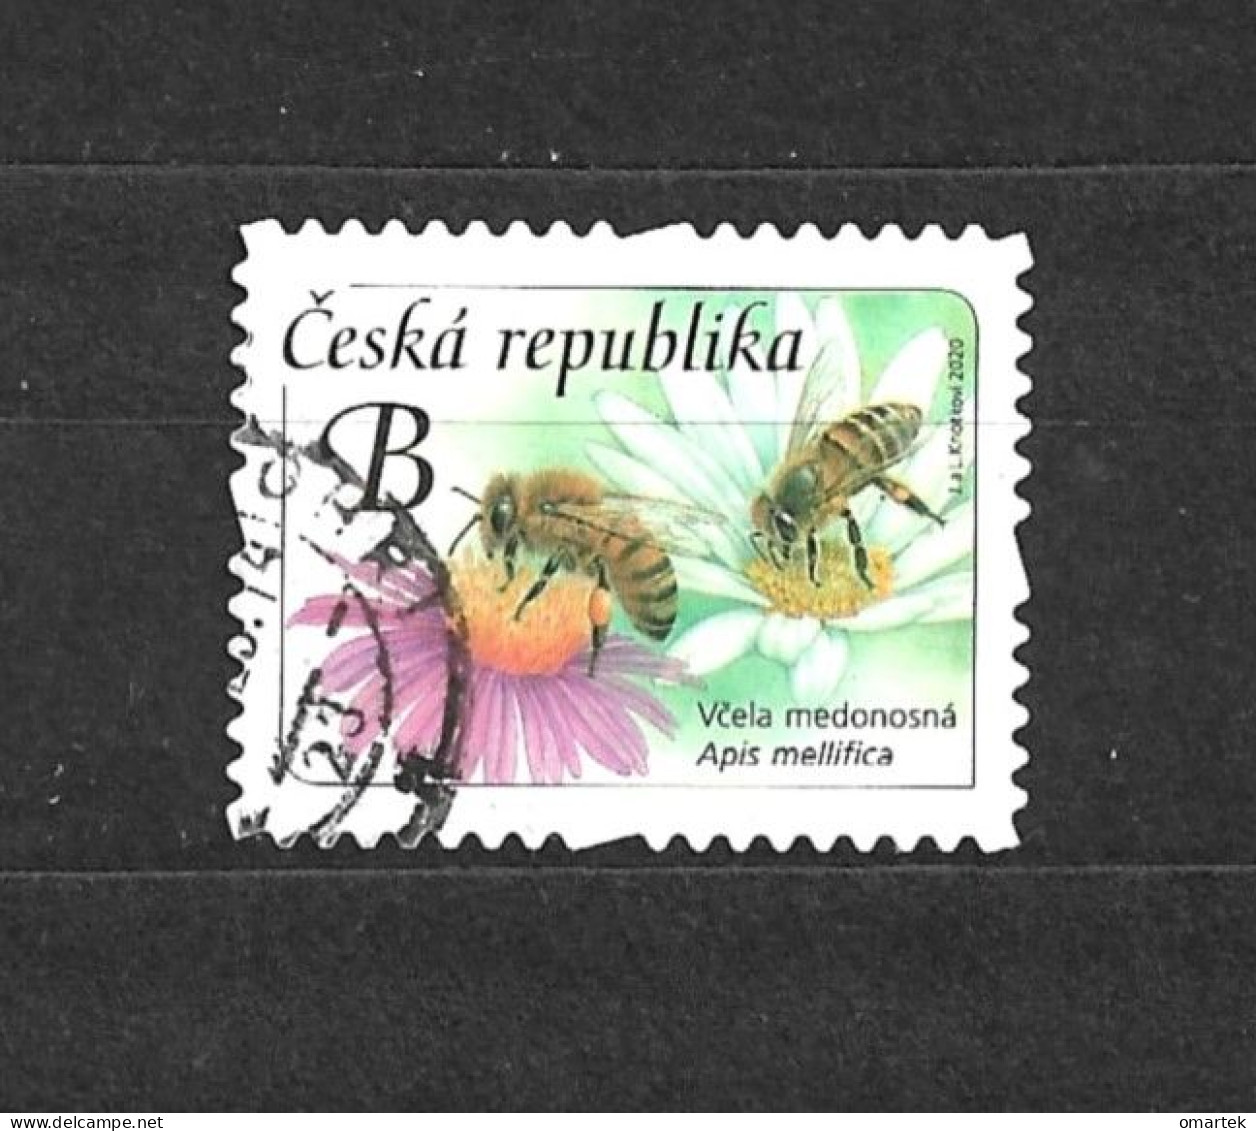 Czech Republic 2020 ⊙ Mi 1067 Sc 3824 Yt 943 Honey Bee. Tschechische Republik. C13 - Gebraucht